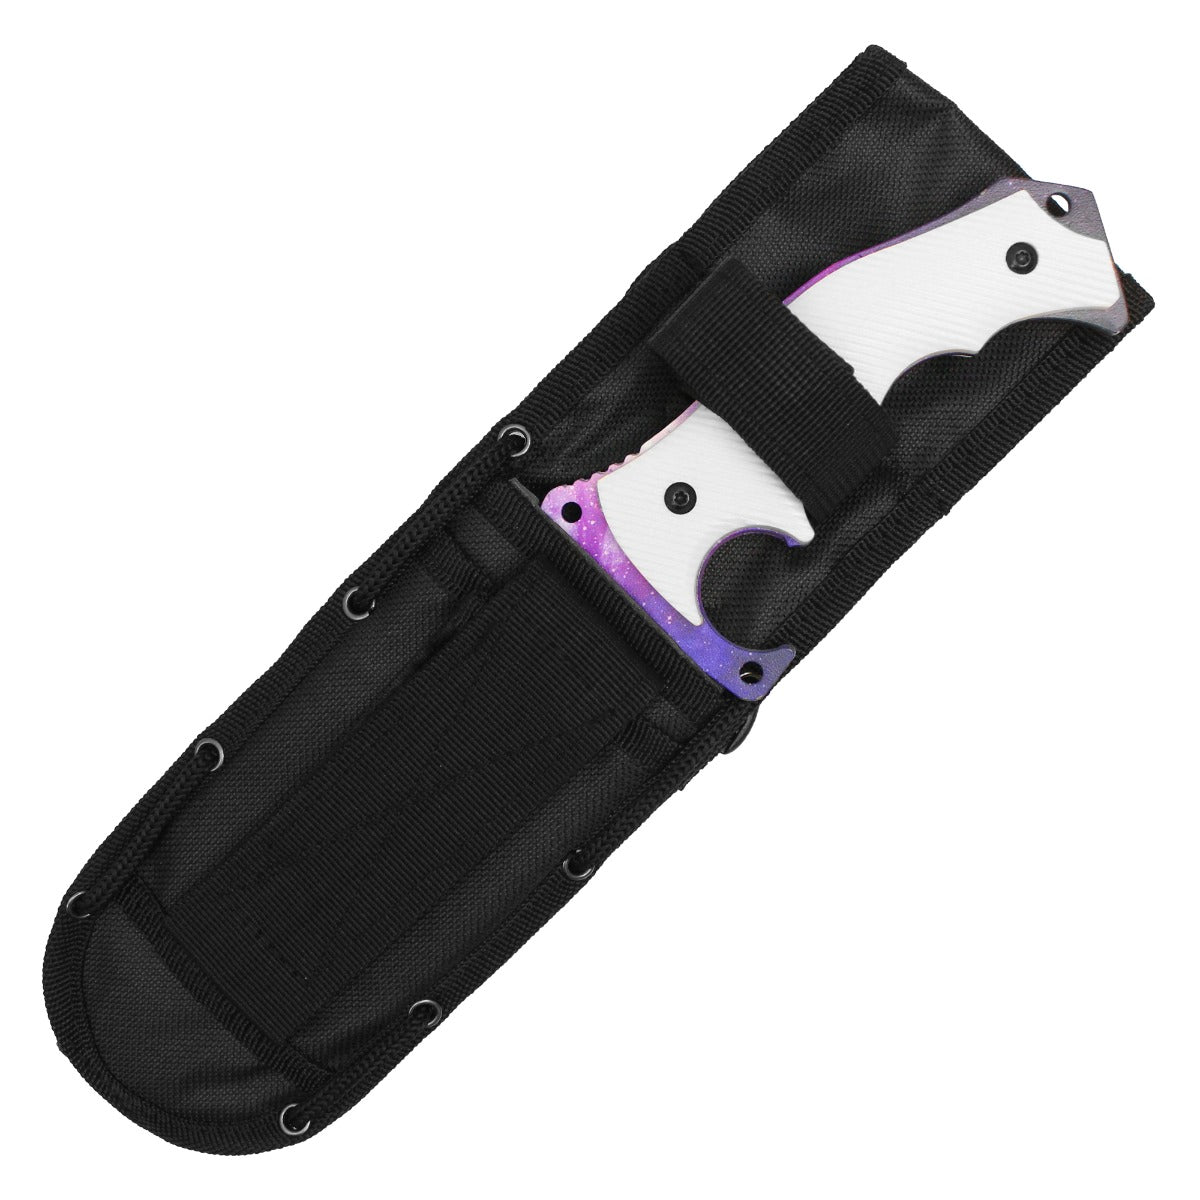 11" Wartech - Galaxy Hunstman Knife